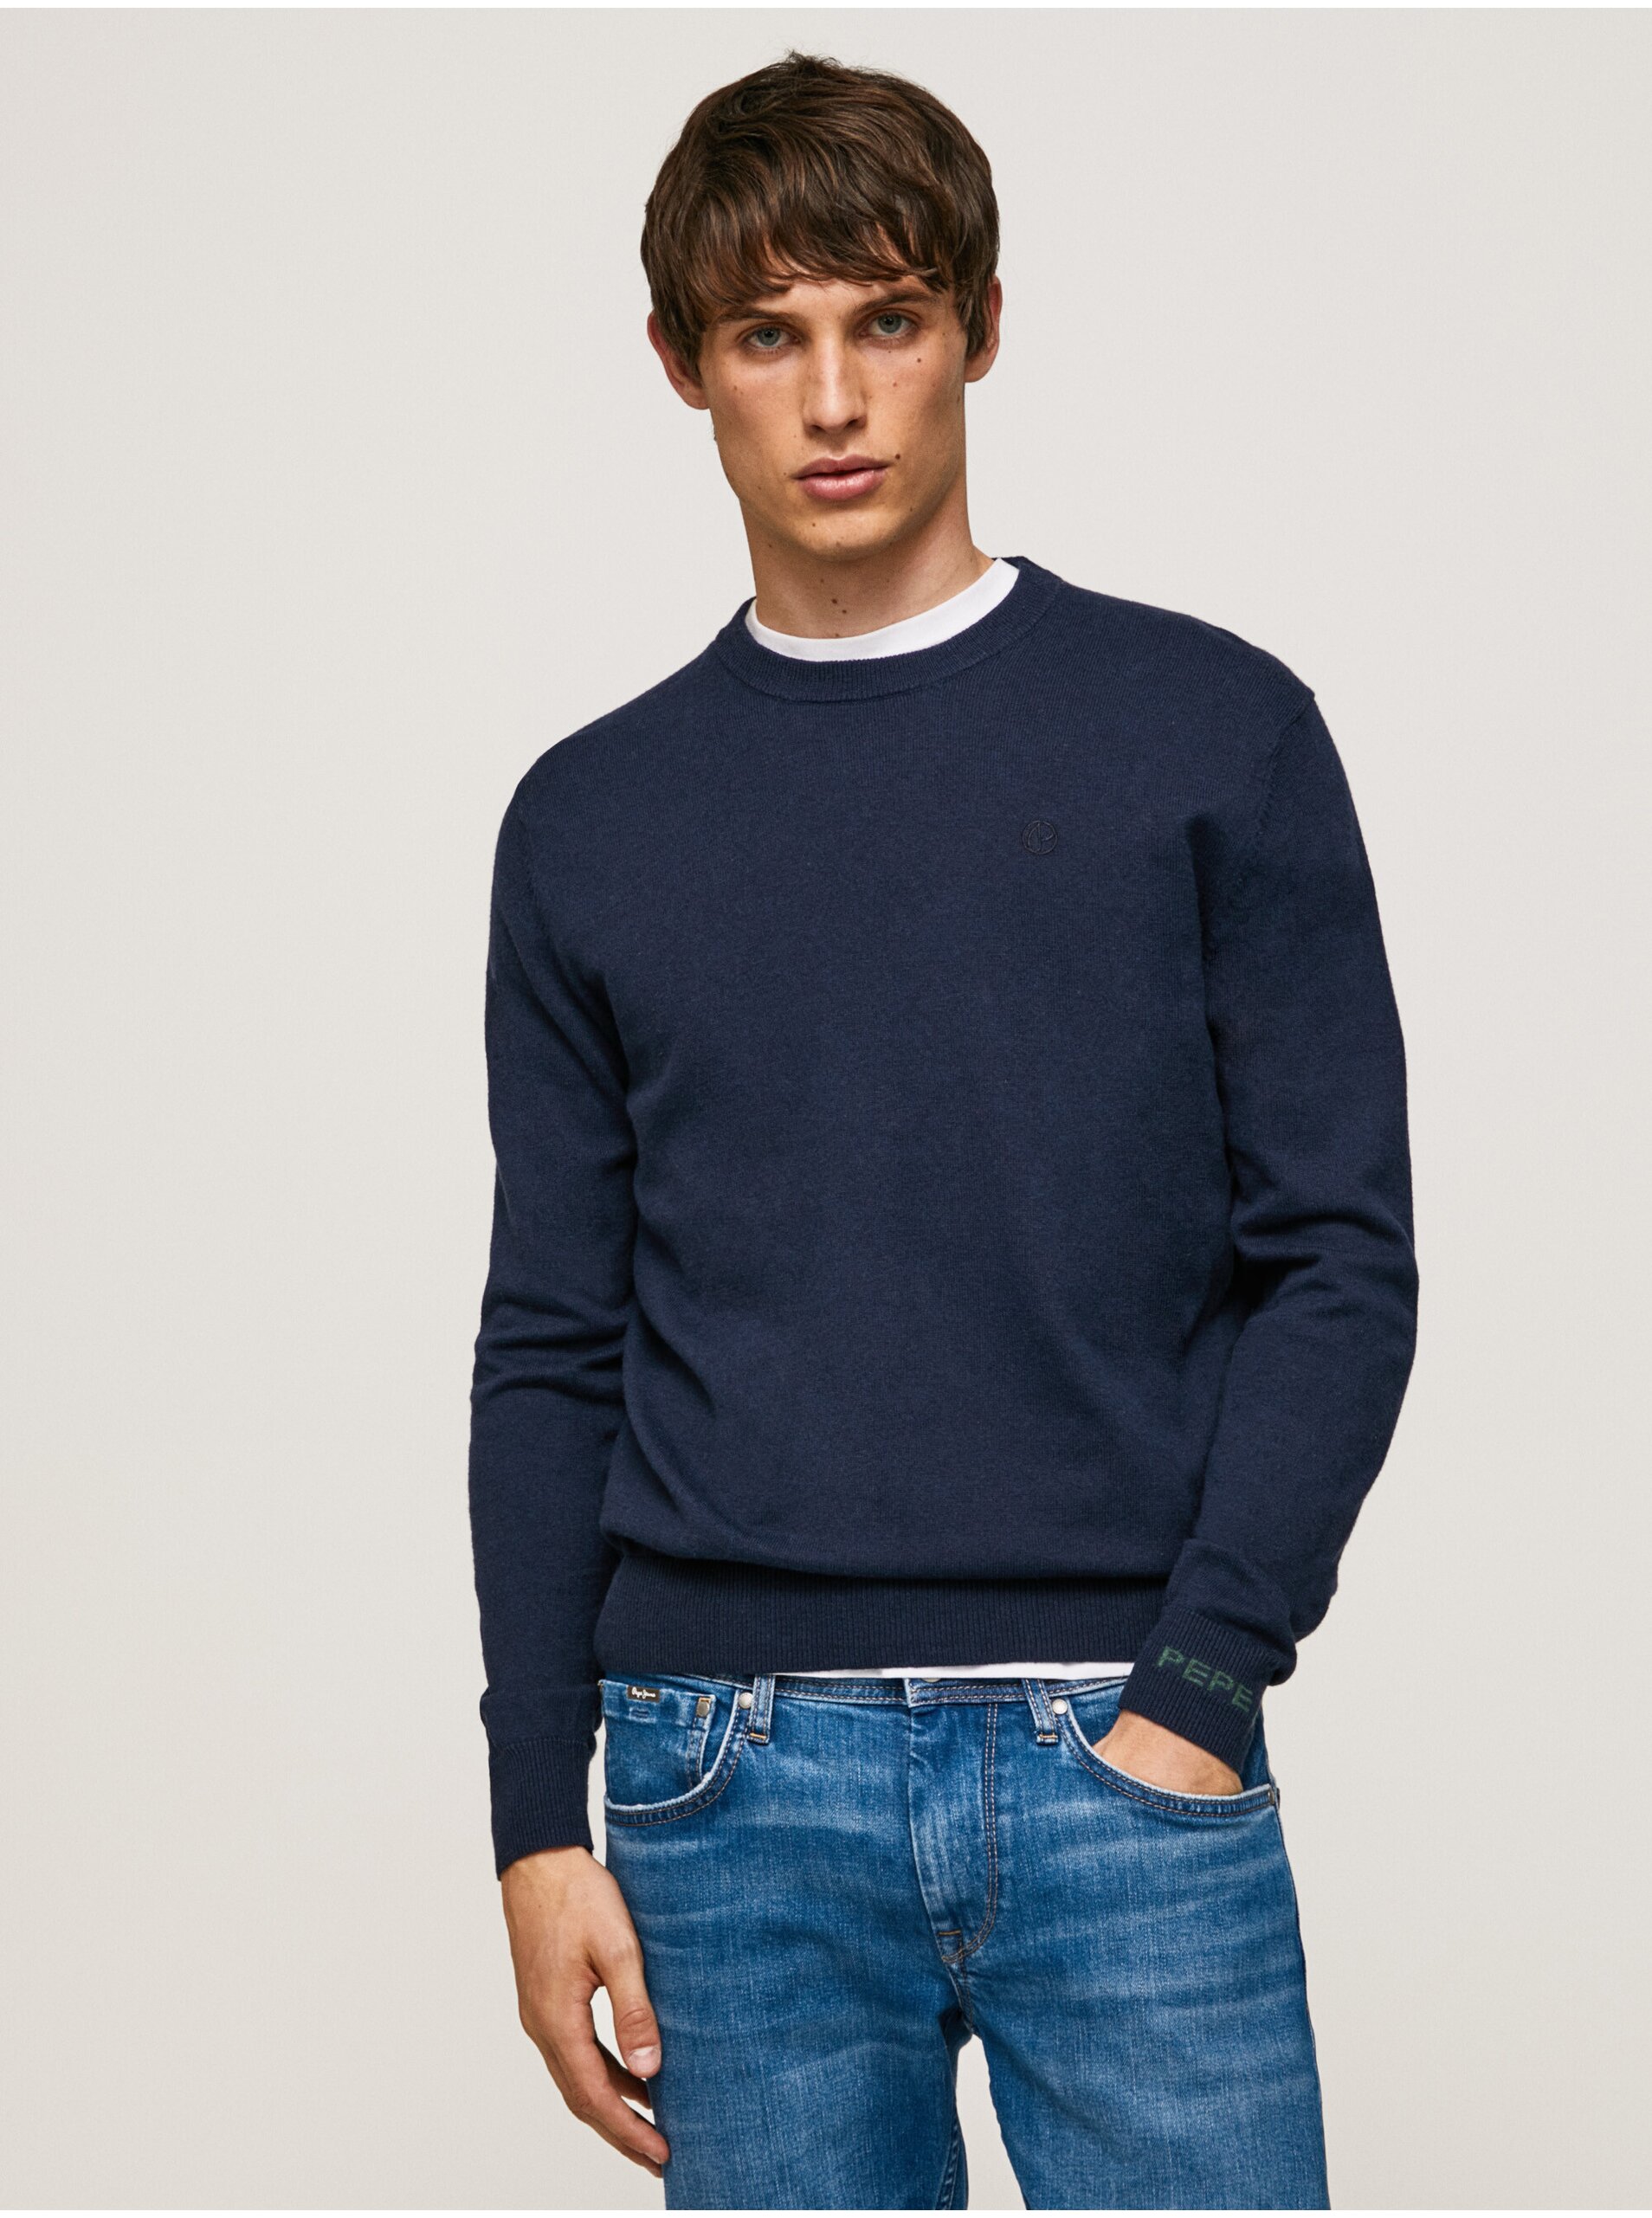 E-shop Modrý pánský svetr s příměsí vlny Pepe Jeans Andre Crew Neck